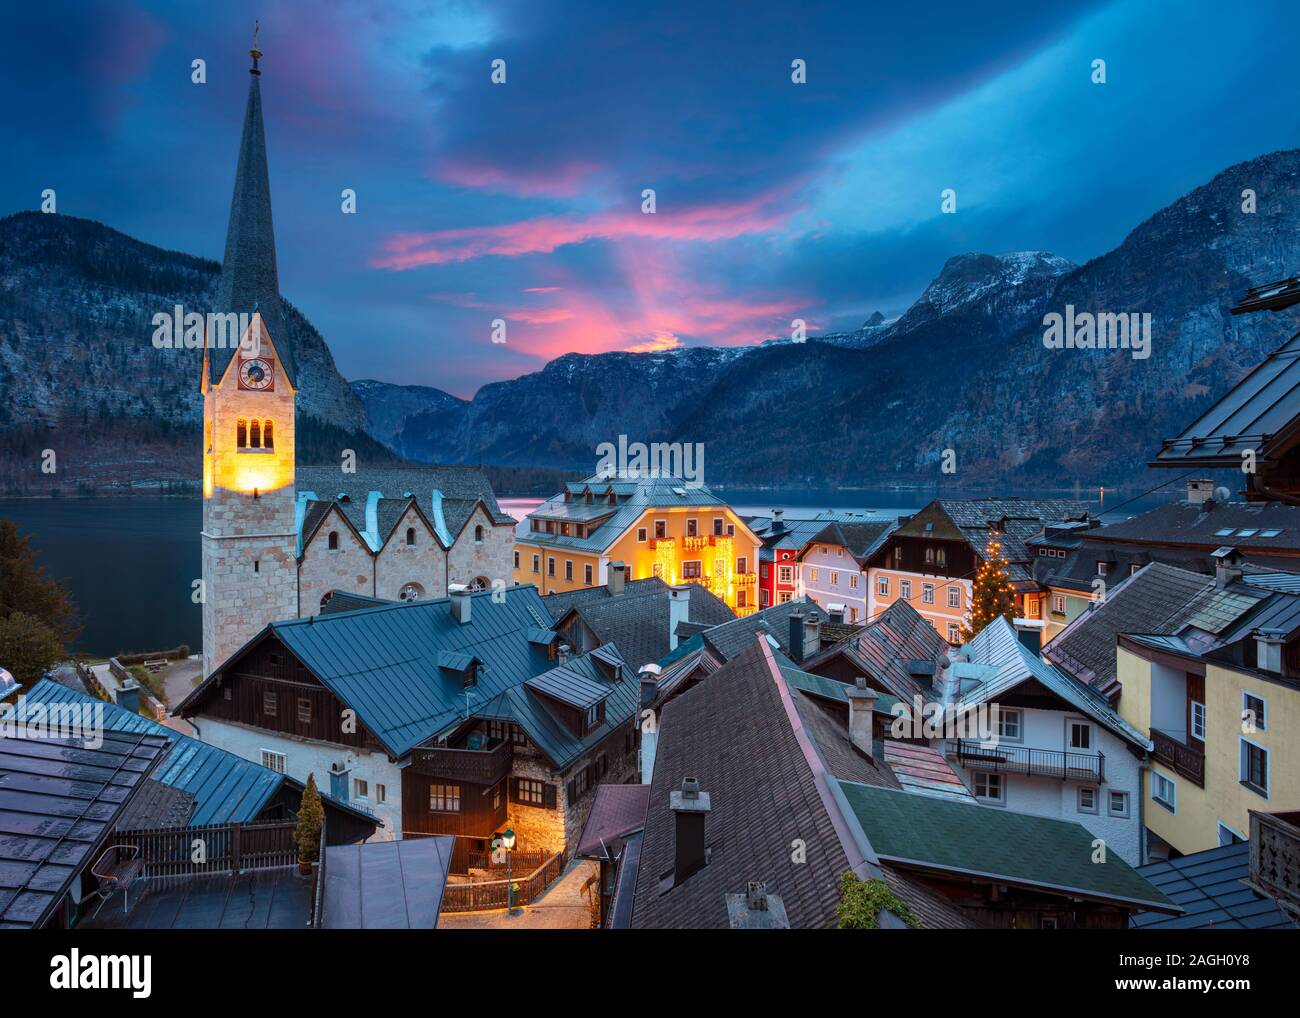 Hallstatt, Österreich. Stadtbild Bild des berühmten alpinen Dorf Hallstatt, Österreich während der Dämmerung blaue Stunde. Stockfoto